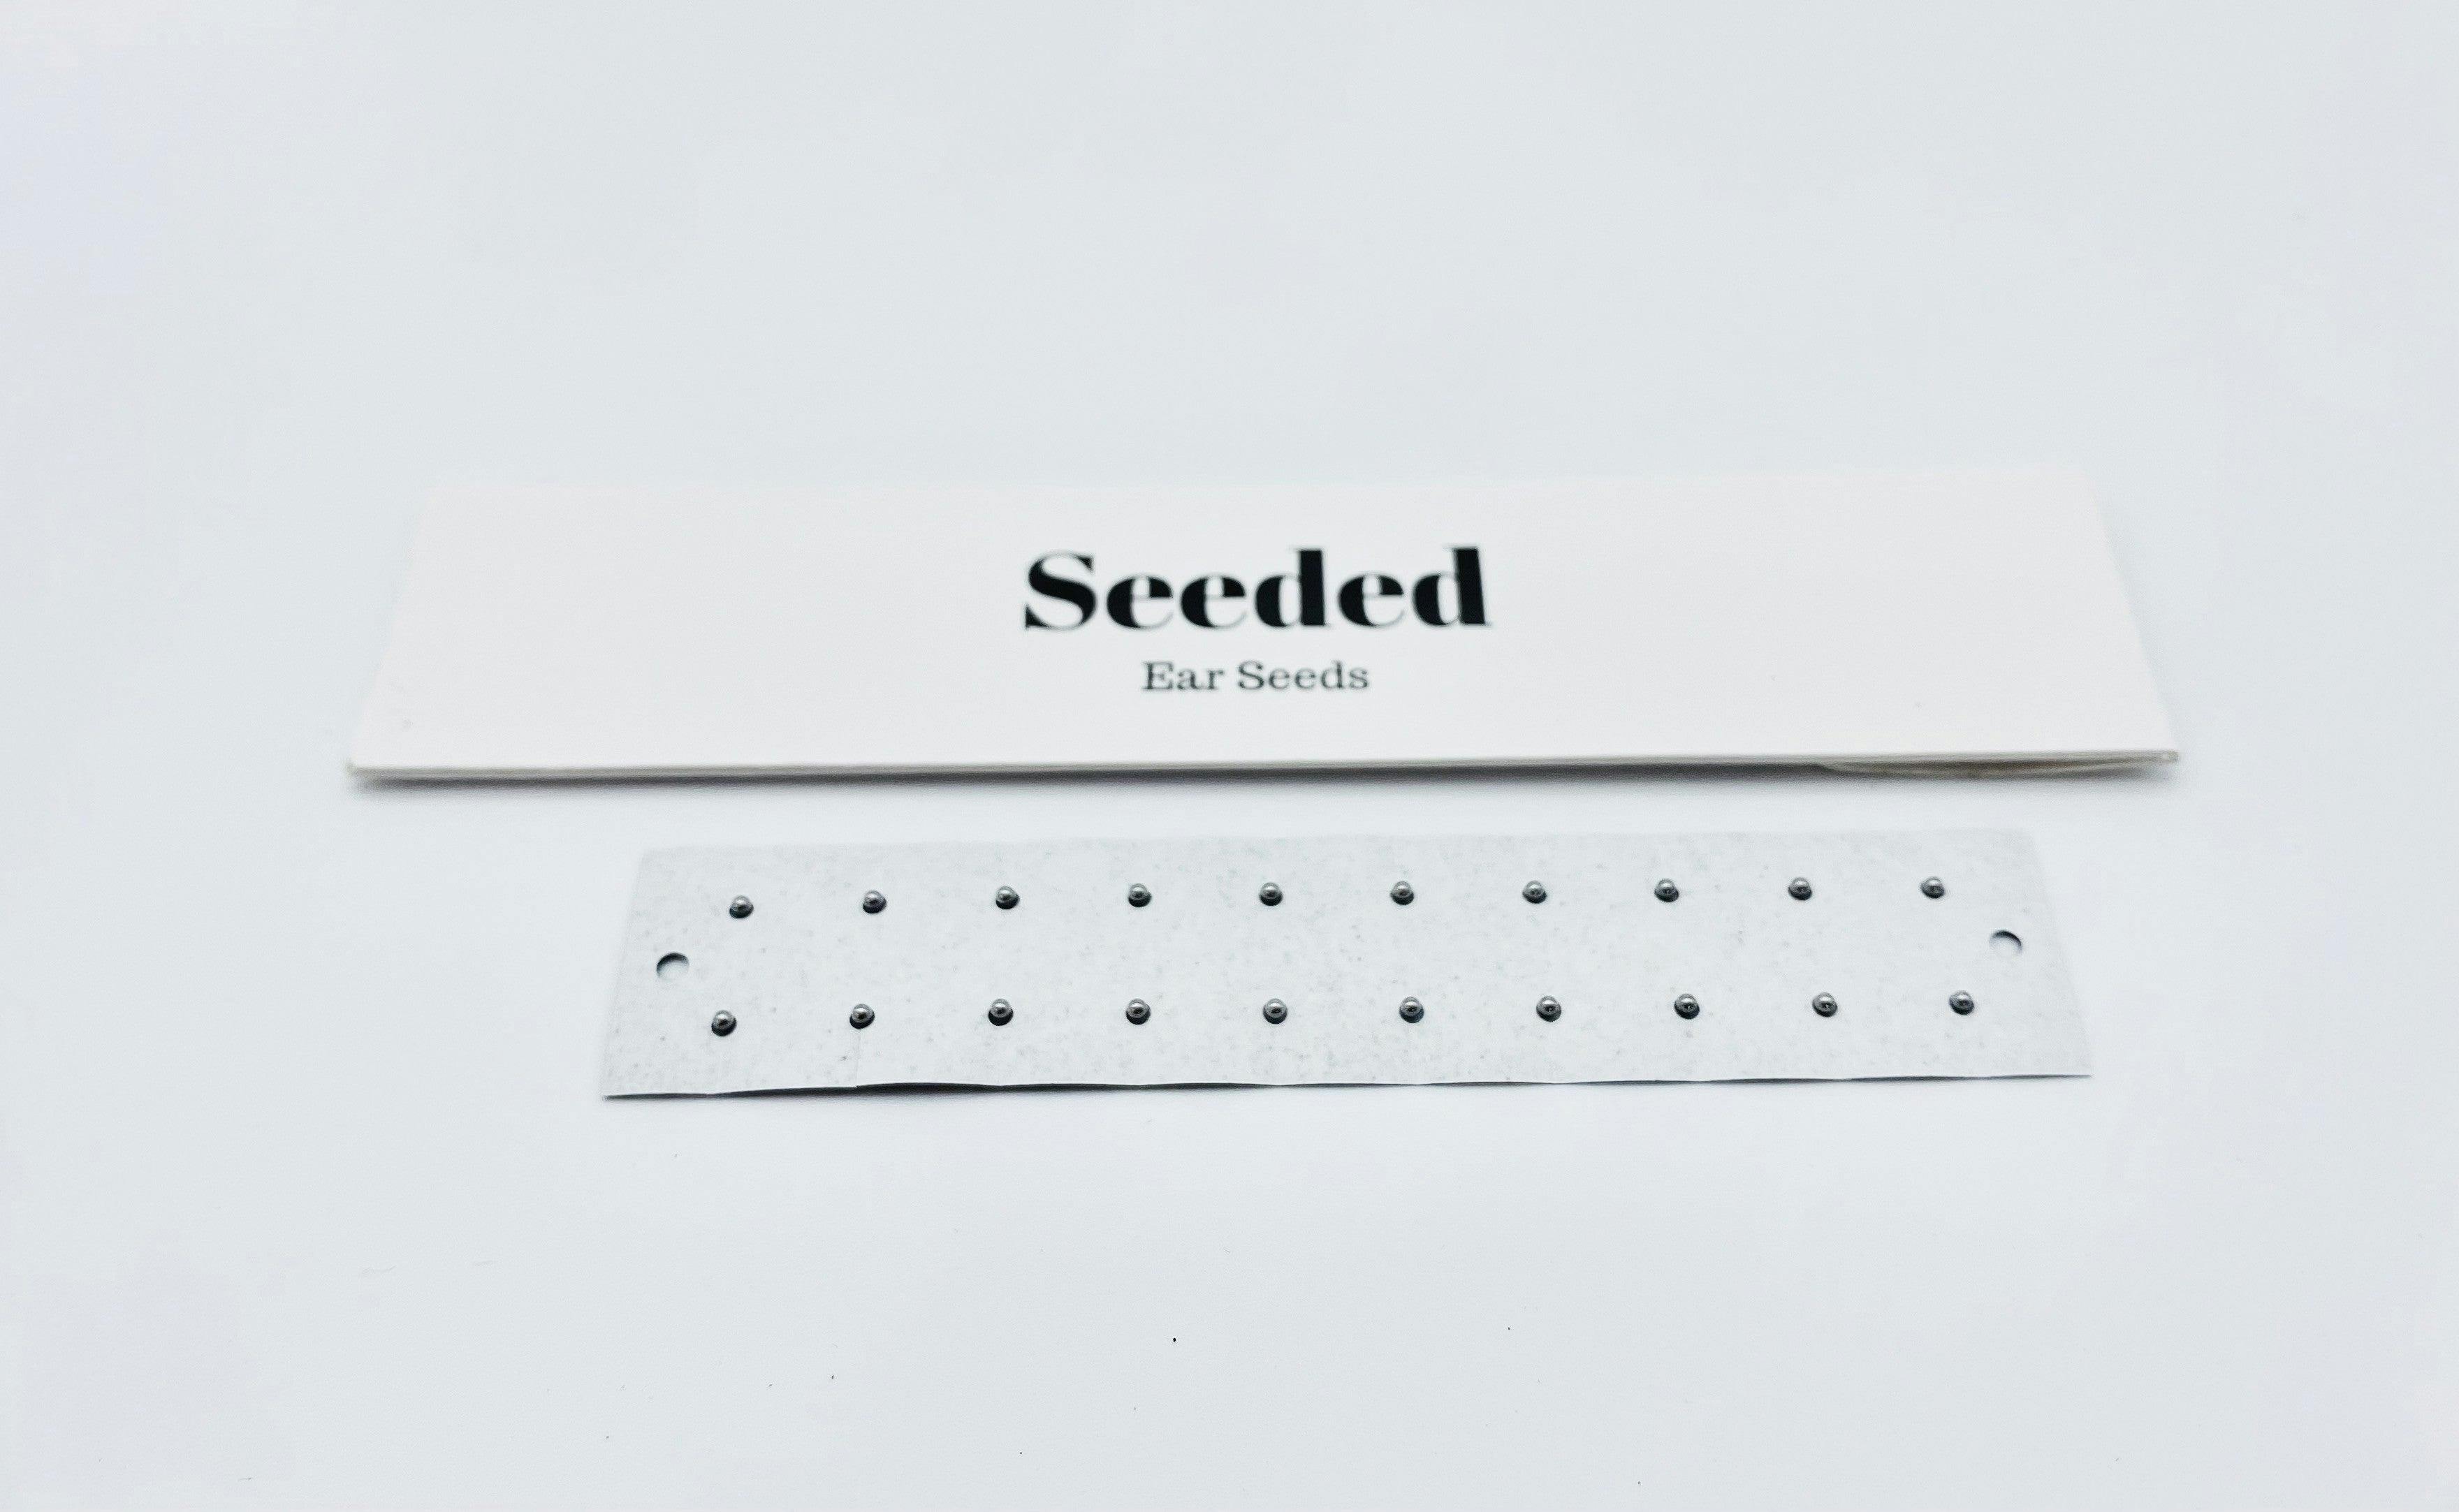 Seeded Ear Seeds Stainless Steel Ear Seed Kit